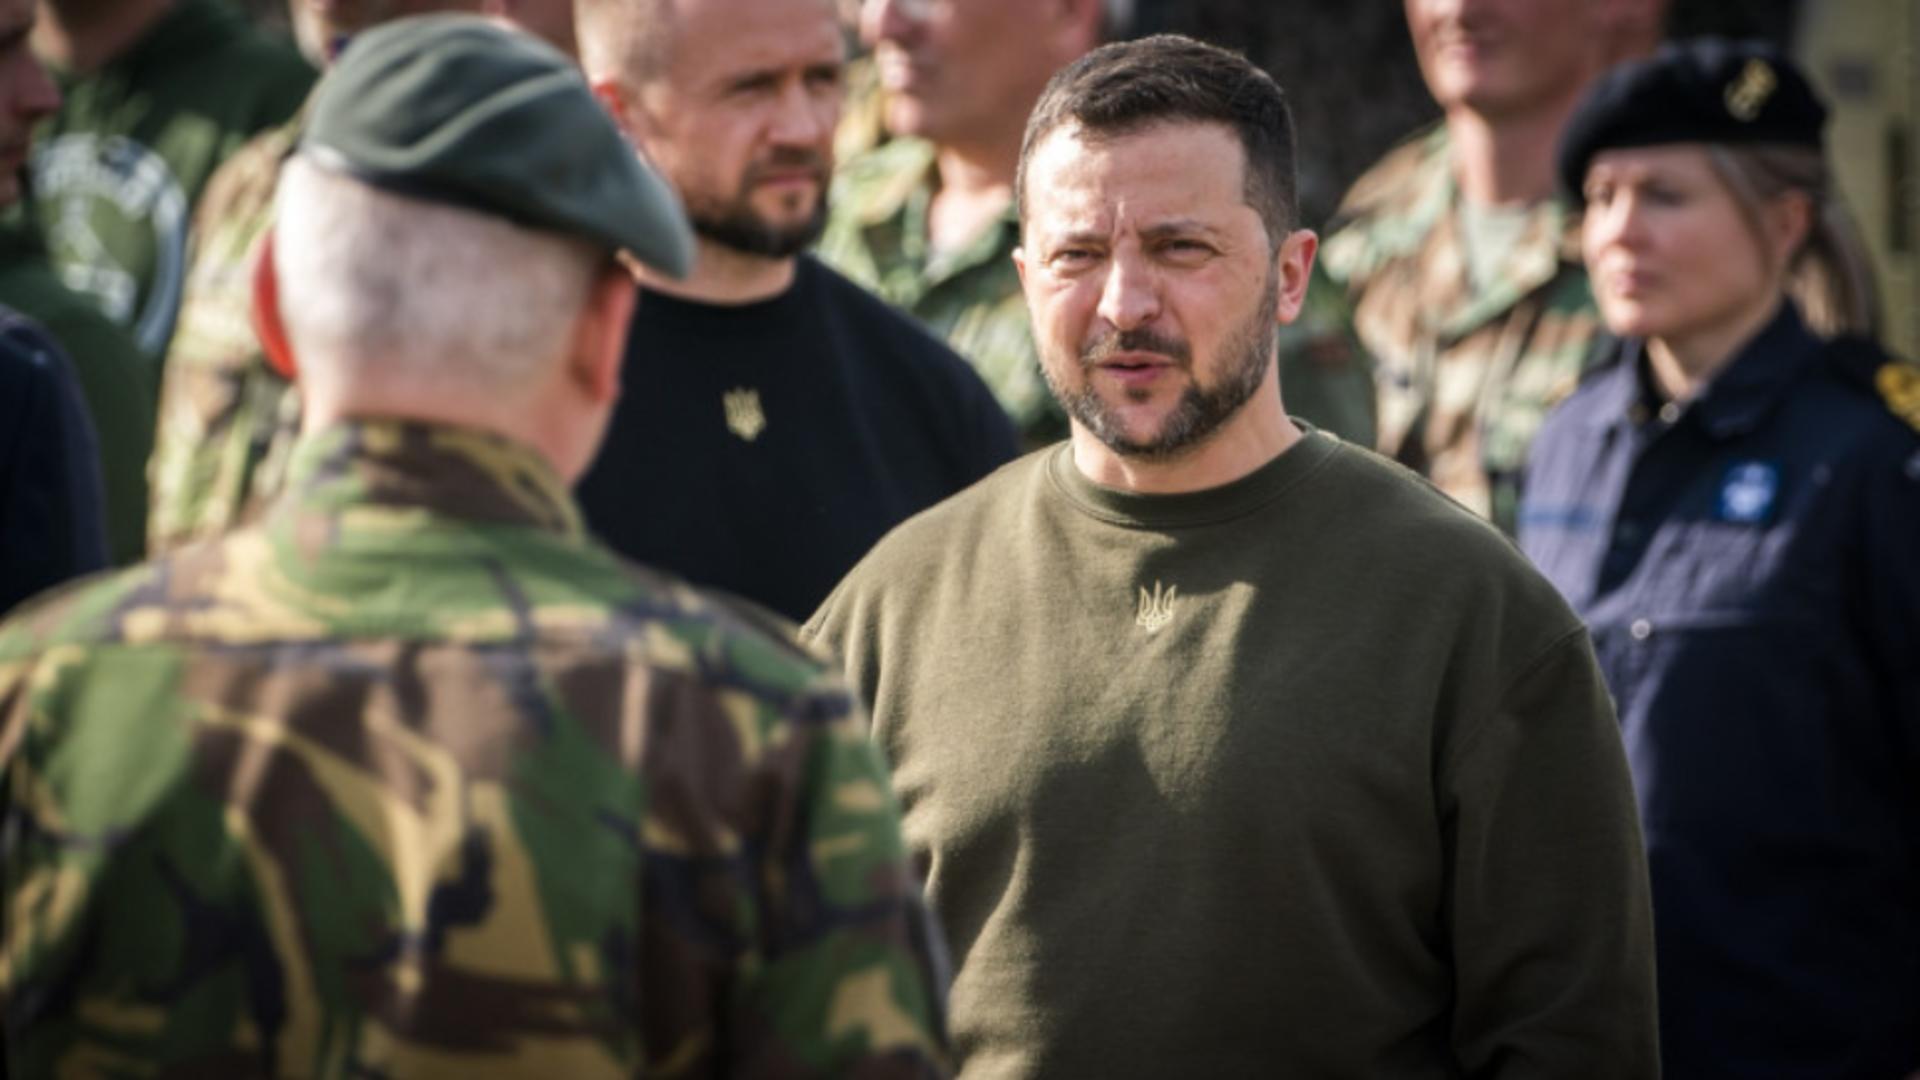 Politician influent, reținut de serviciul secret din Ucraina – Dezvăluiri despre corupția din armată, după demiterile lui Zelenski